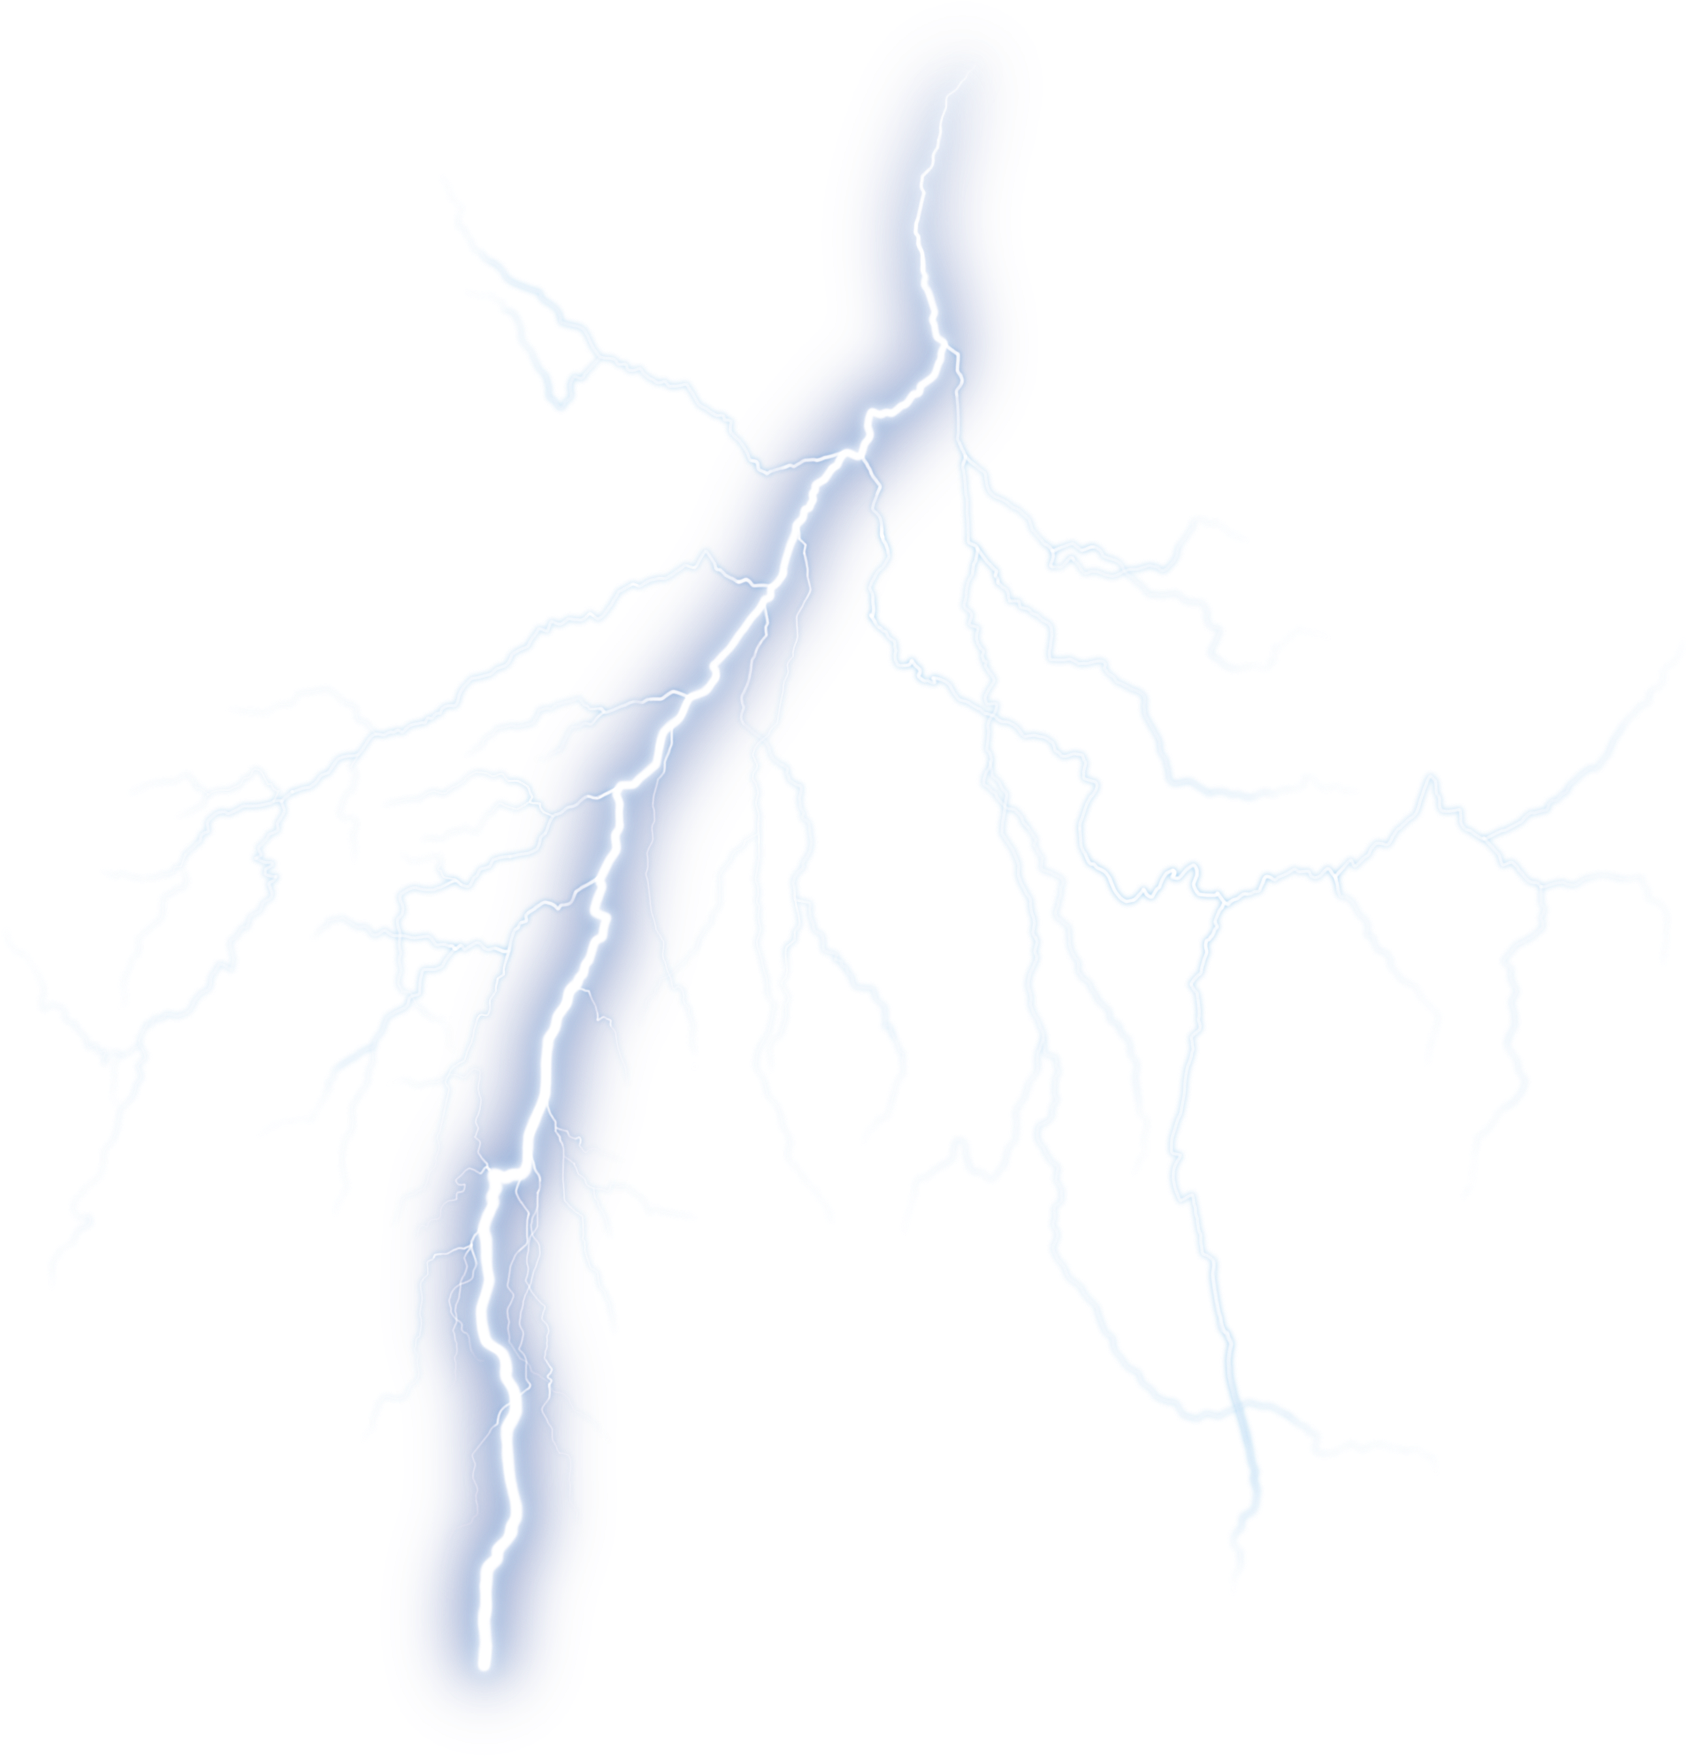 Electric Lightning Bolt Illustration PNG image